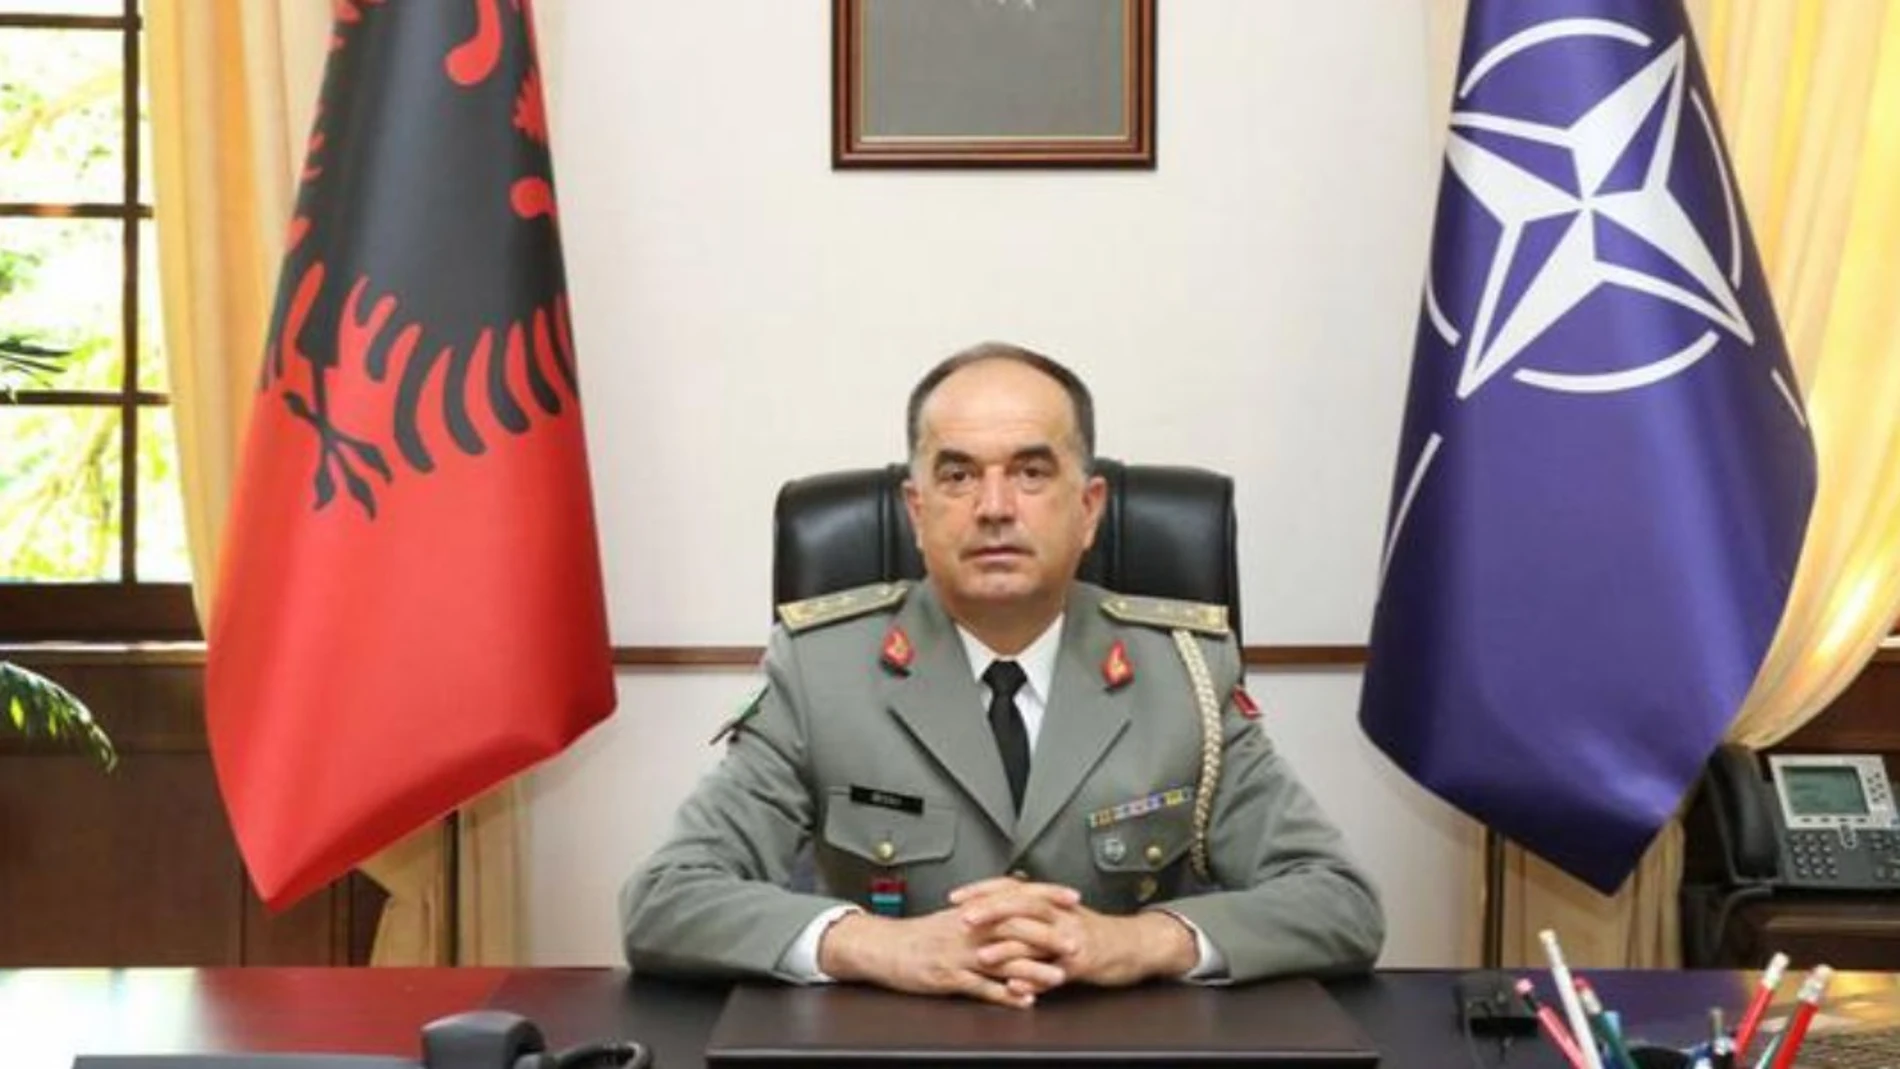 Bajram Begaj elegido como nuevo presidente de Albania